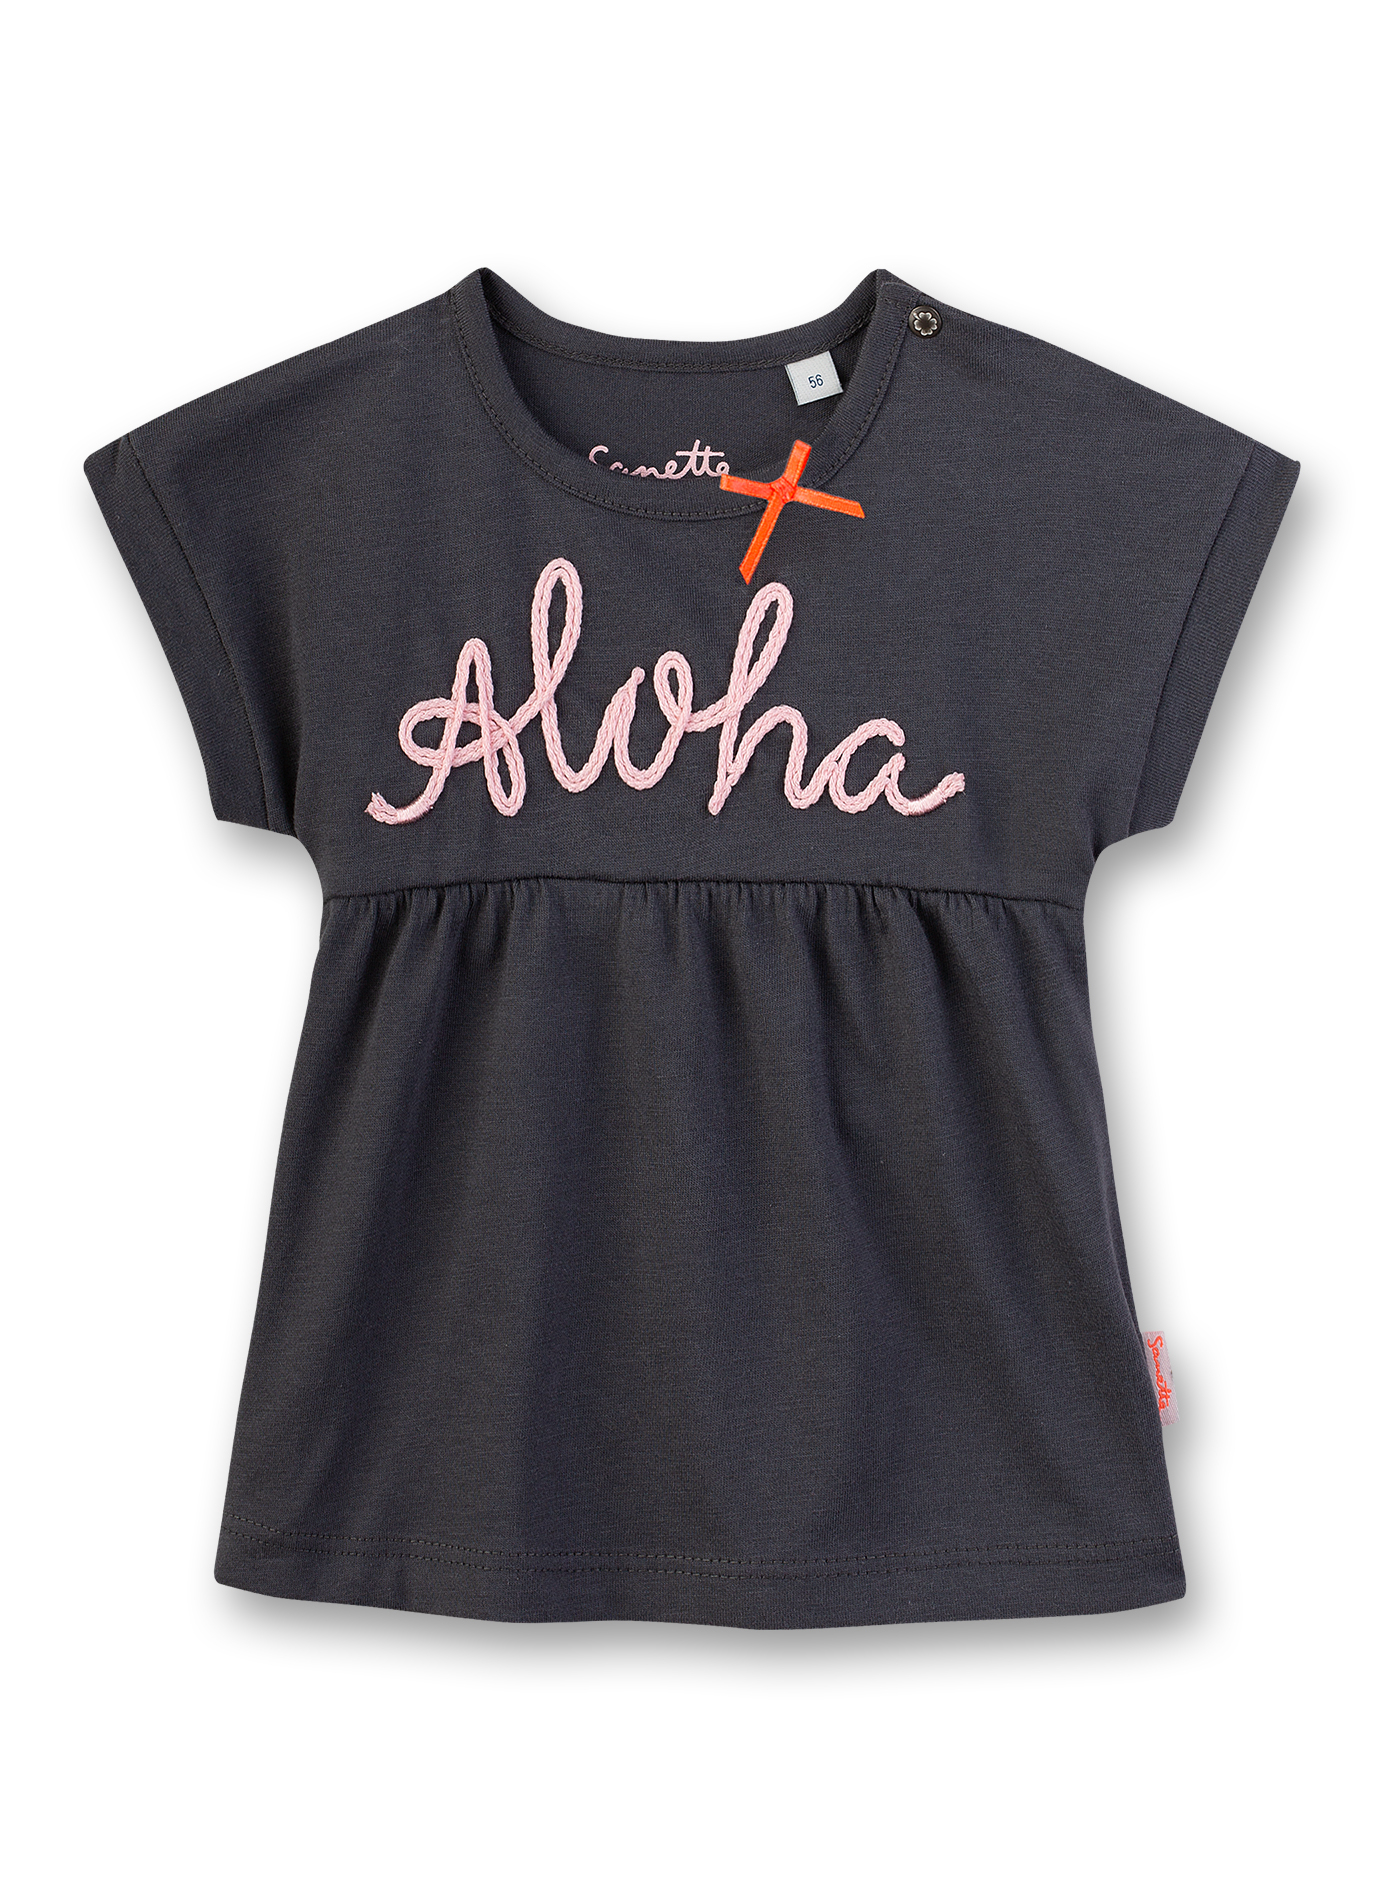 Mädchen T-Shirt Dunkelgrau Aloha